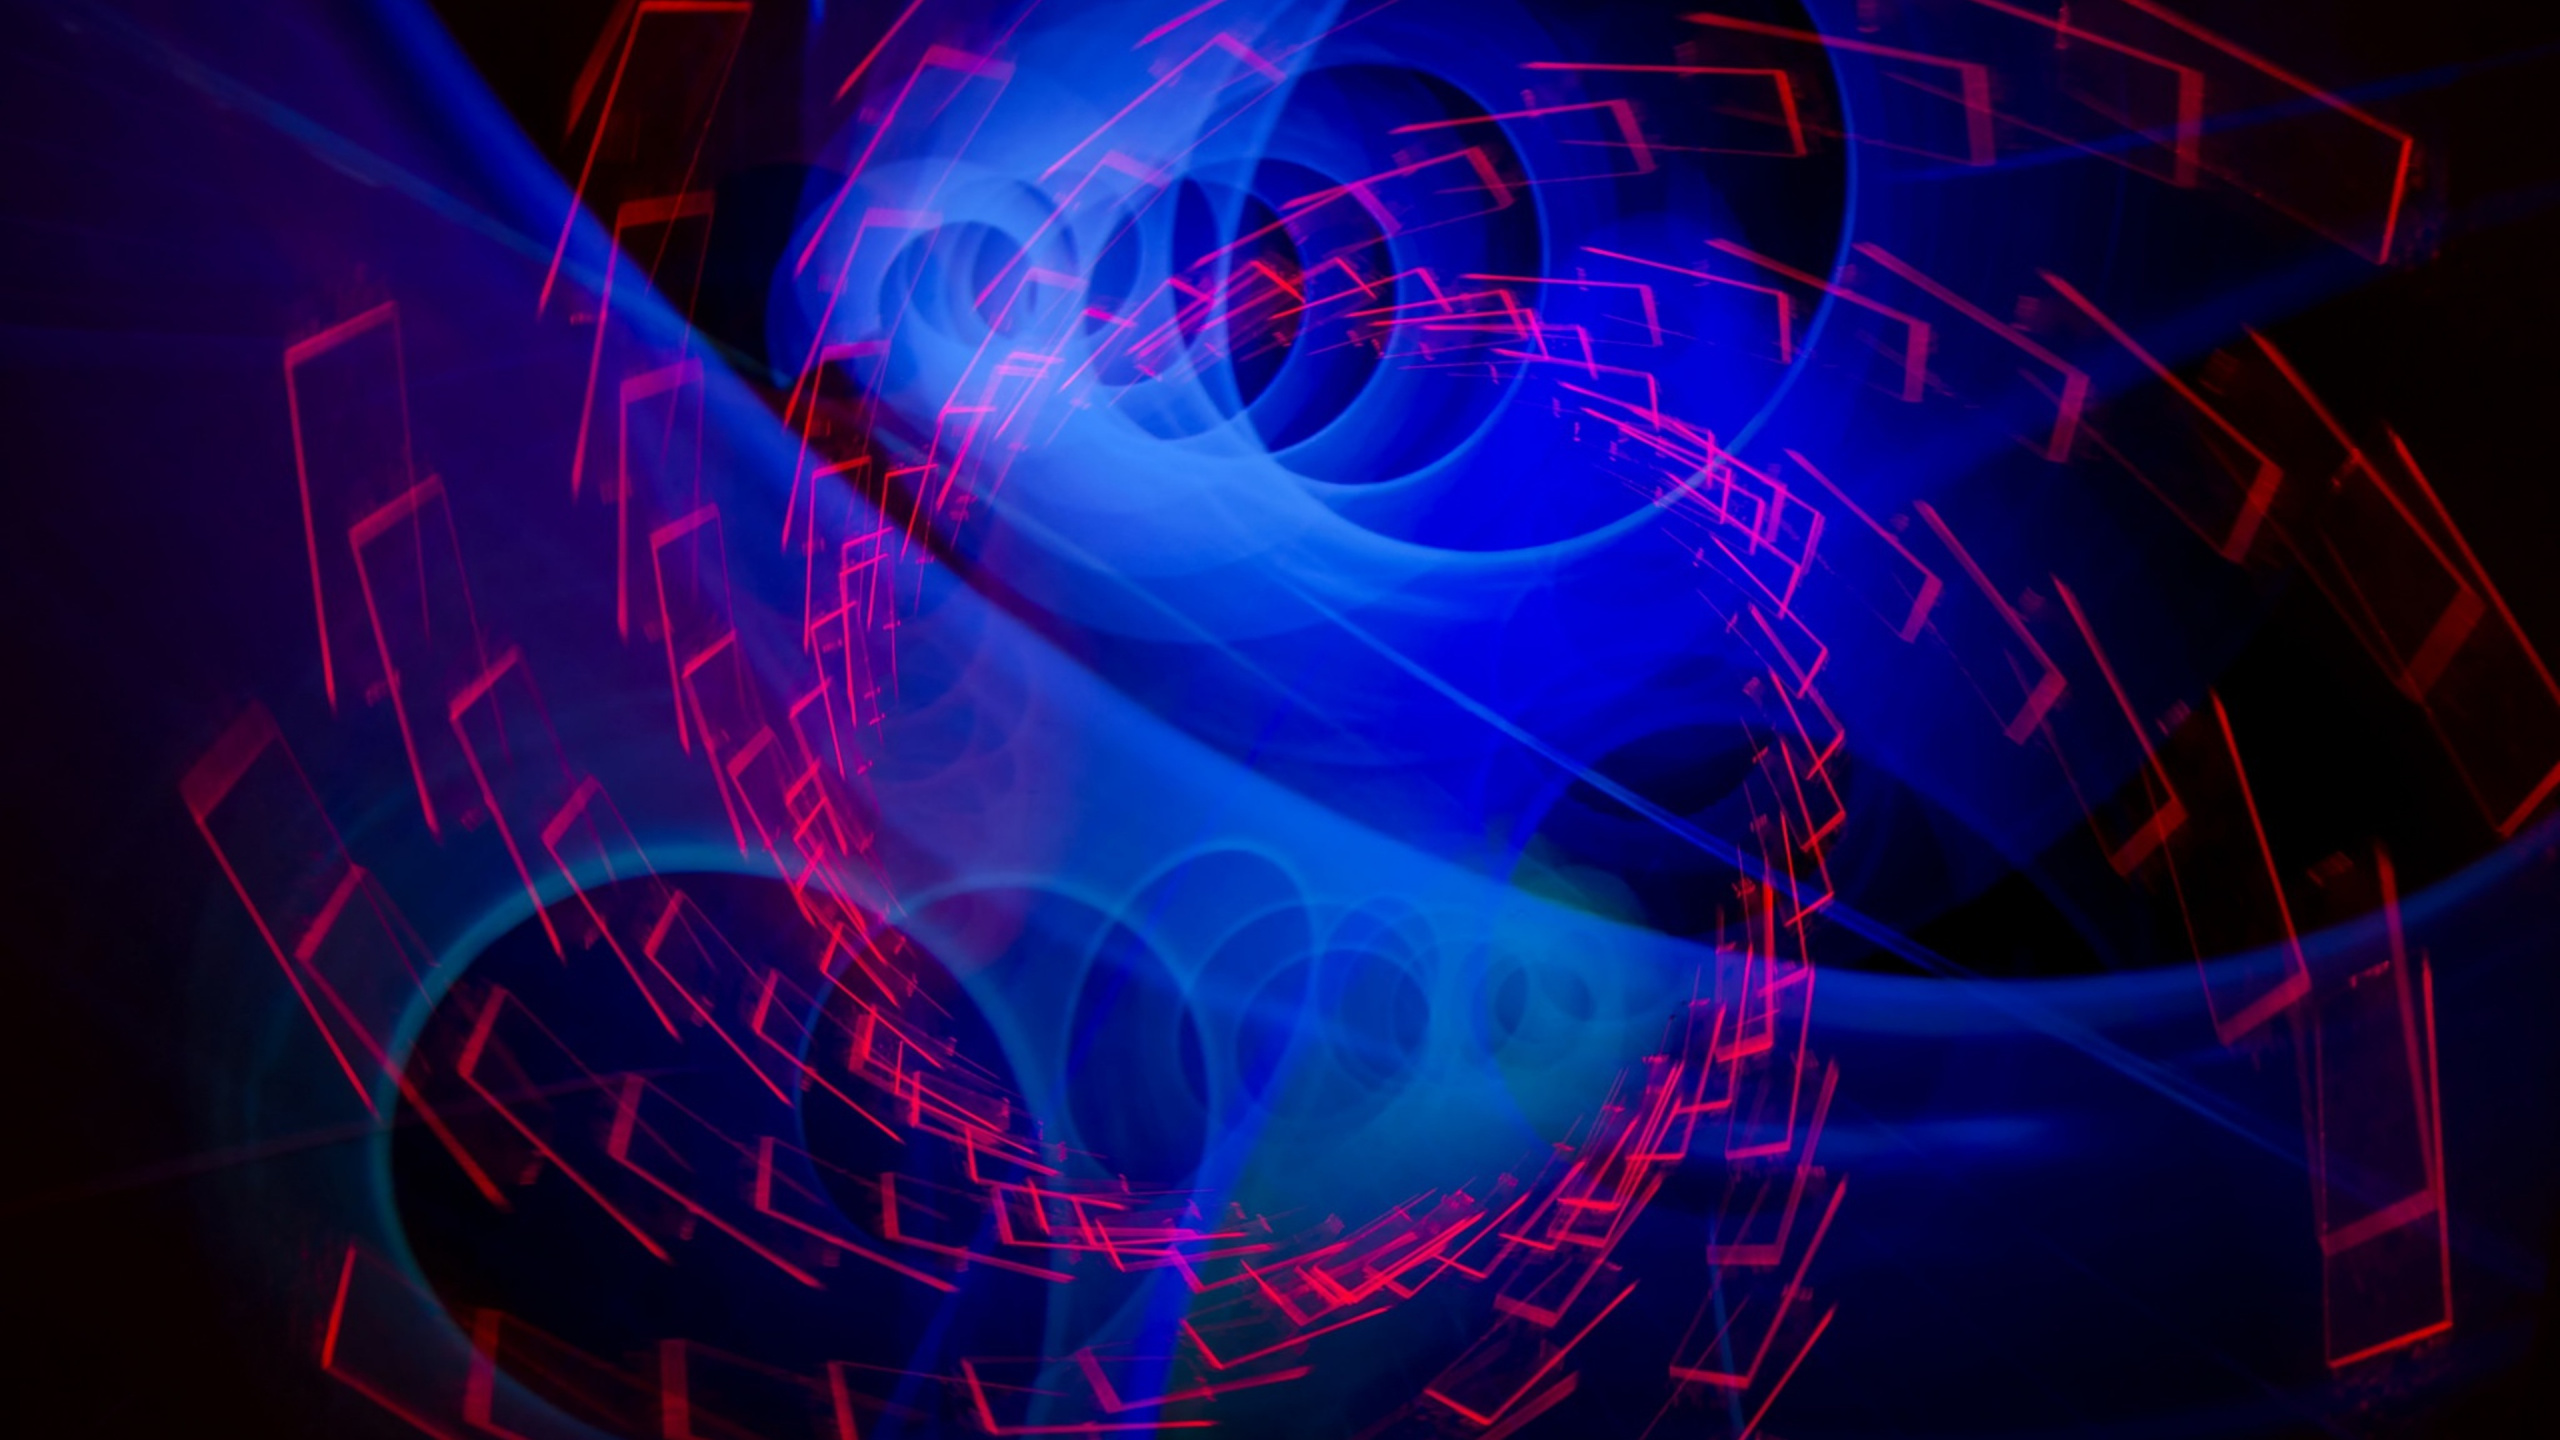 Papel Tapiz Digital de Luz Azul y Roja. Wallpaper in 2560x1440 Resolution